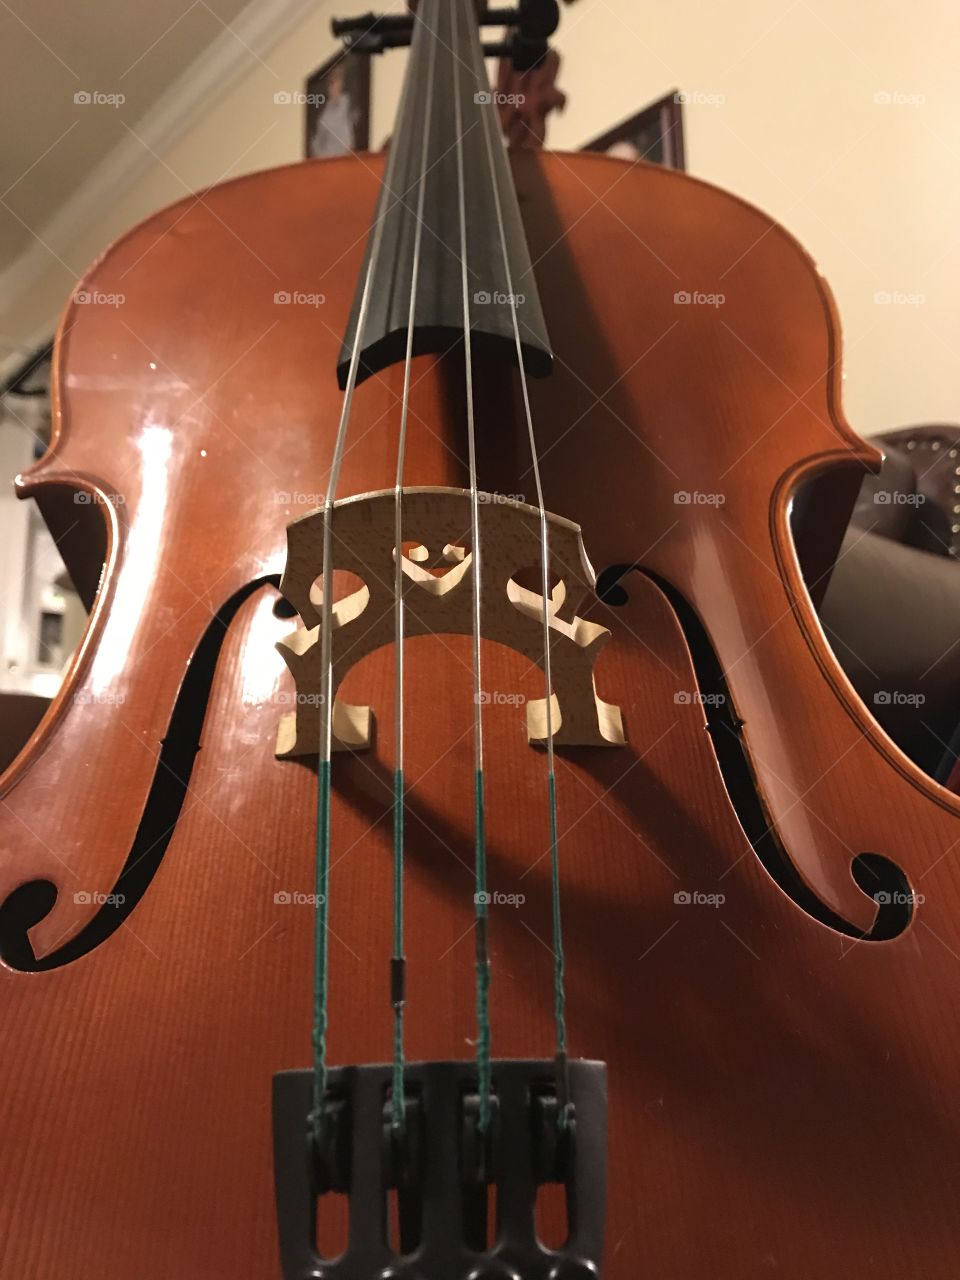 Cello strings